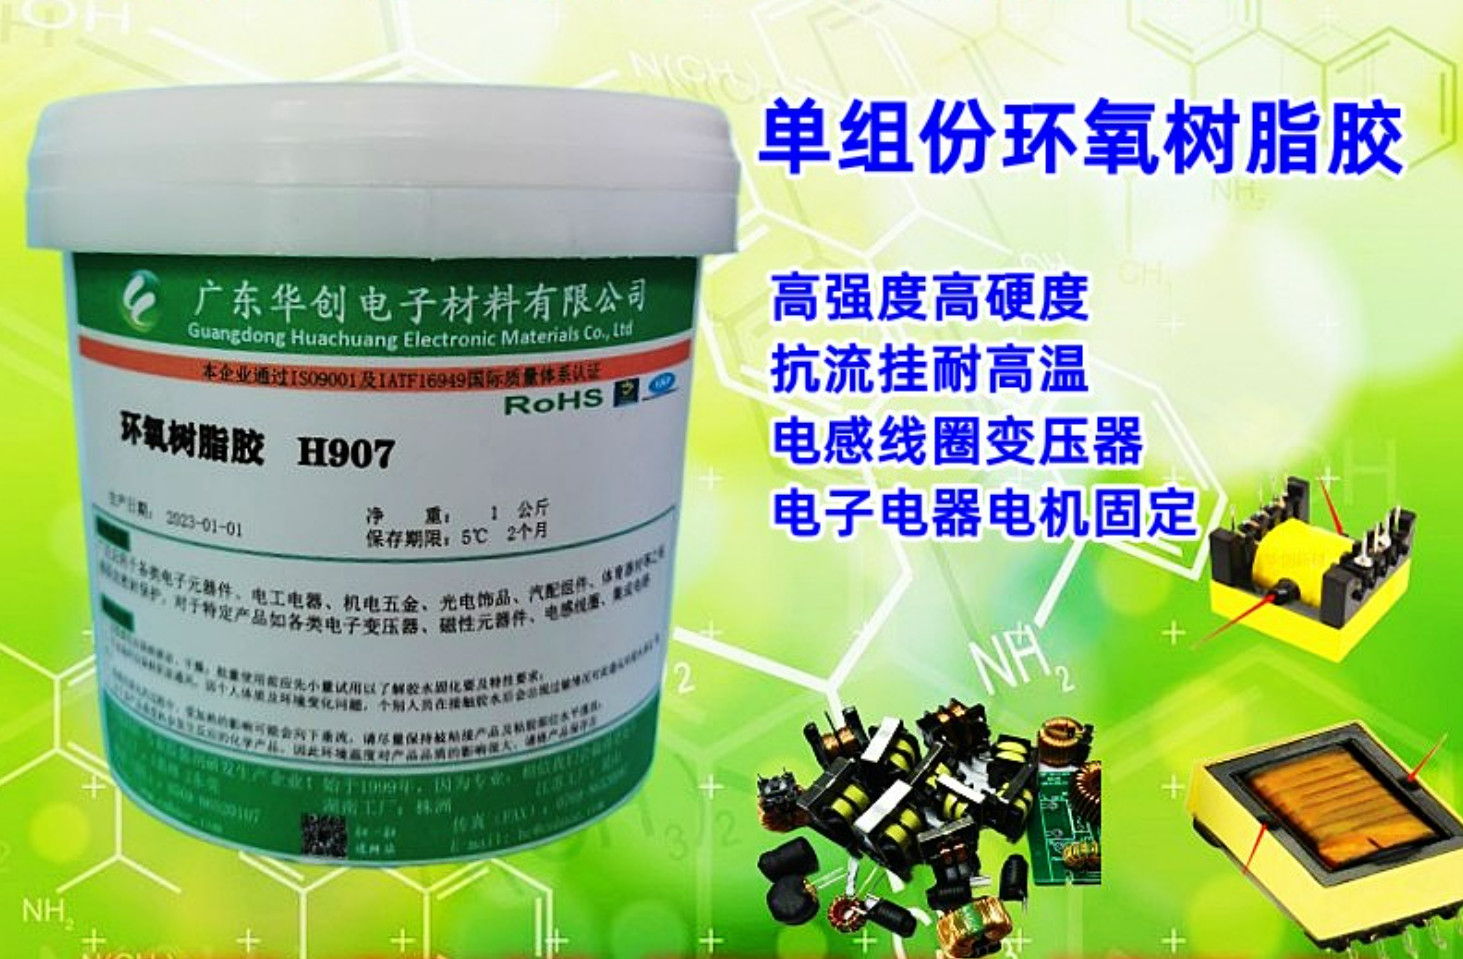 H907-HF 磁芯胶 无卤环氧树脂胶 